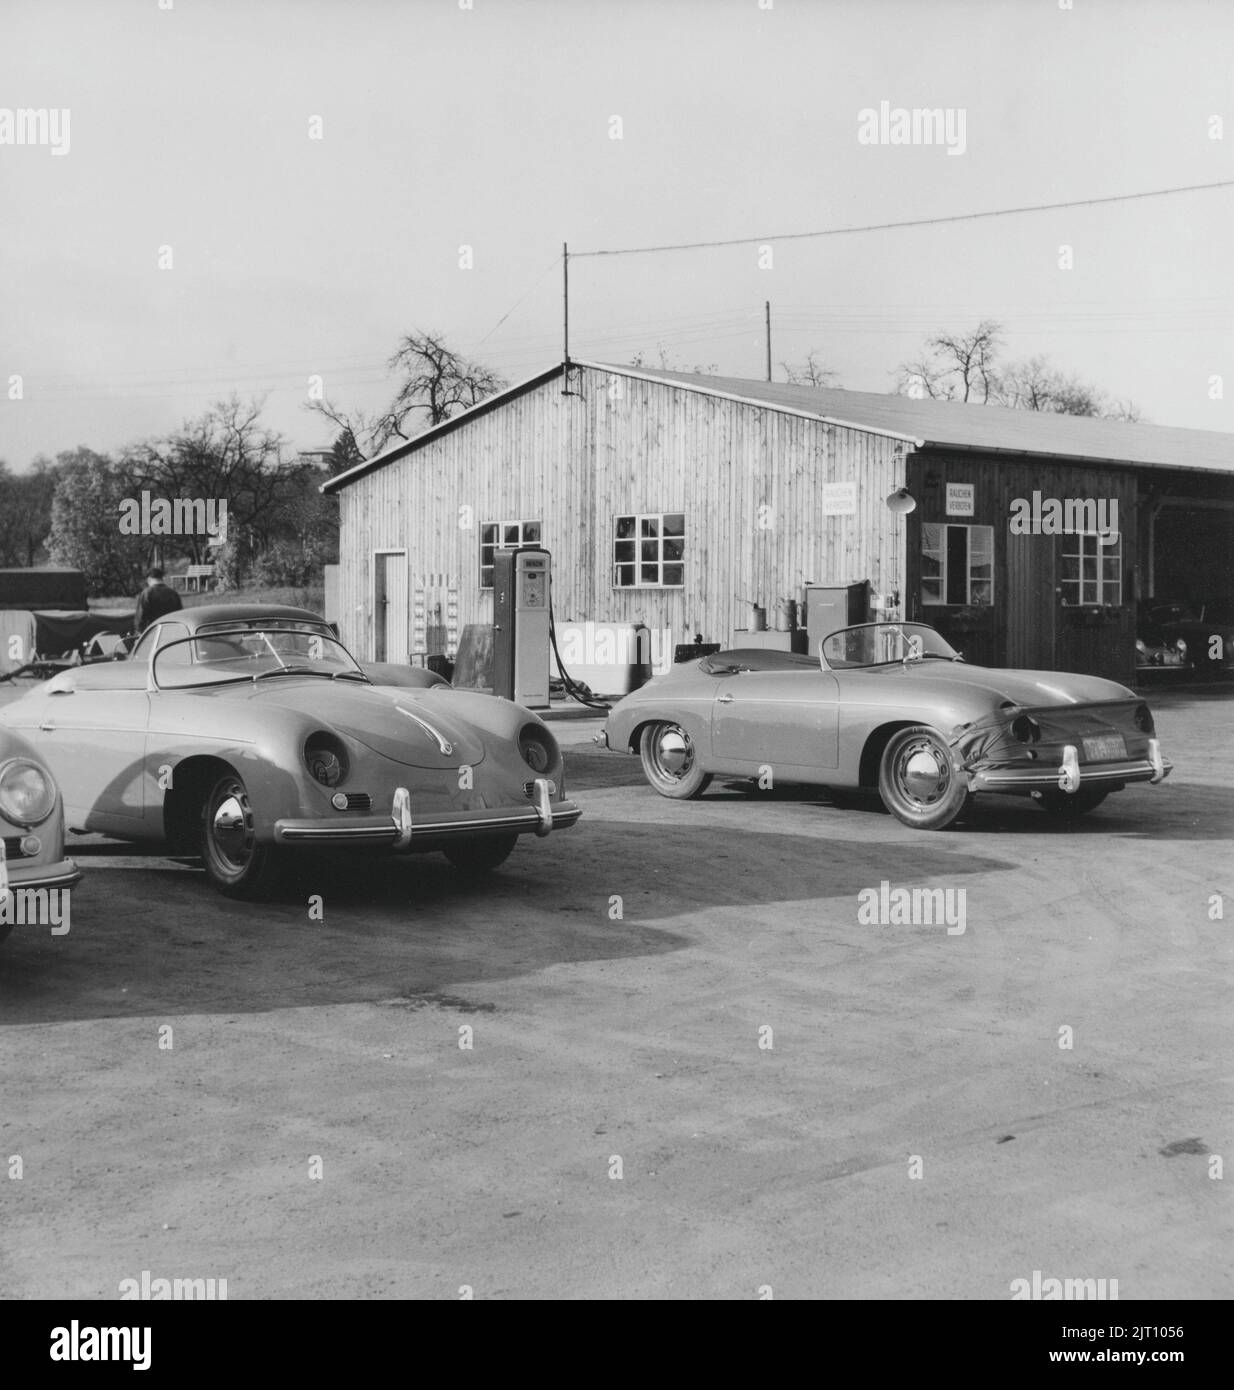 Storia Porsche. Una rara vista della fabbrica di automobili Porsche a Stoccarda in Germania negli anni '1950s. In loco le vetture Porsche sono visibili in diverse fasi di produzione. 1951. Foto Stock